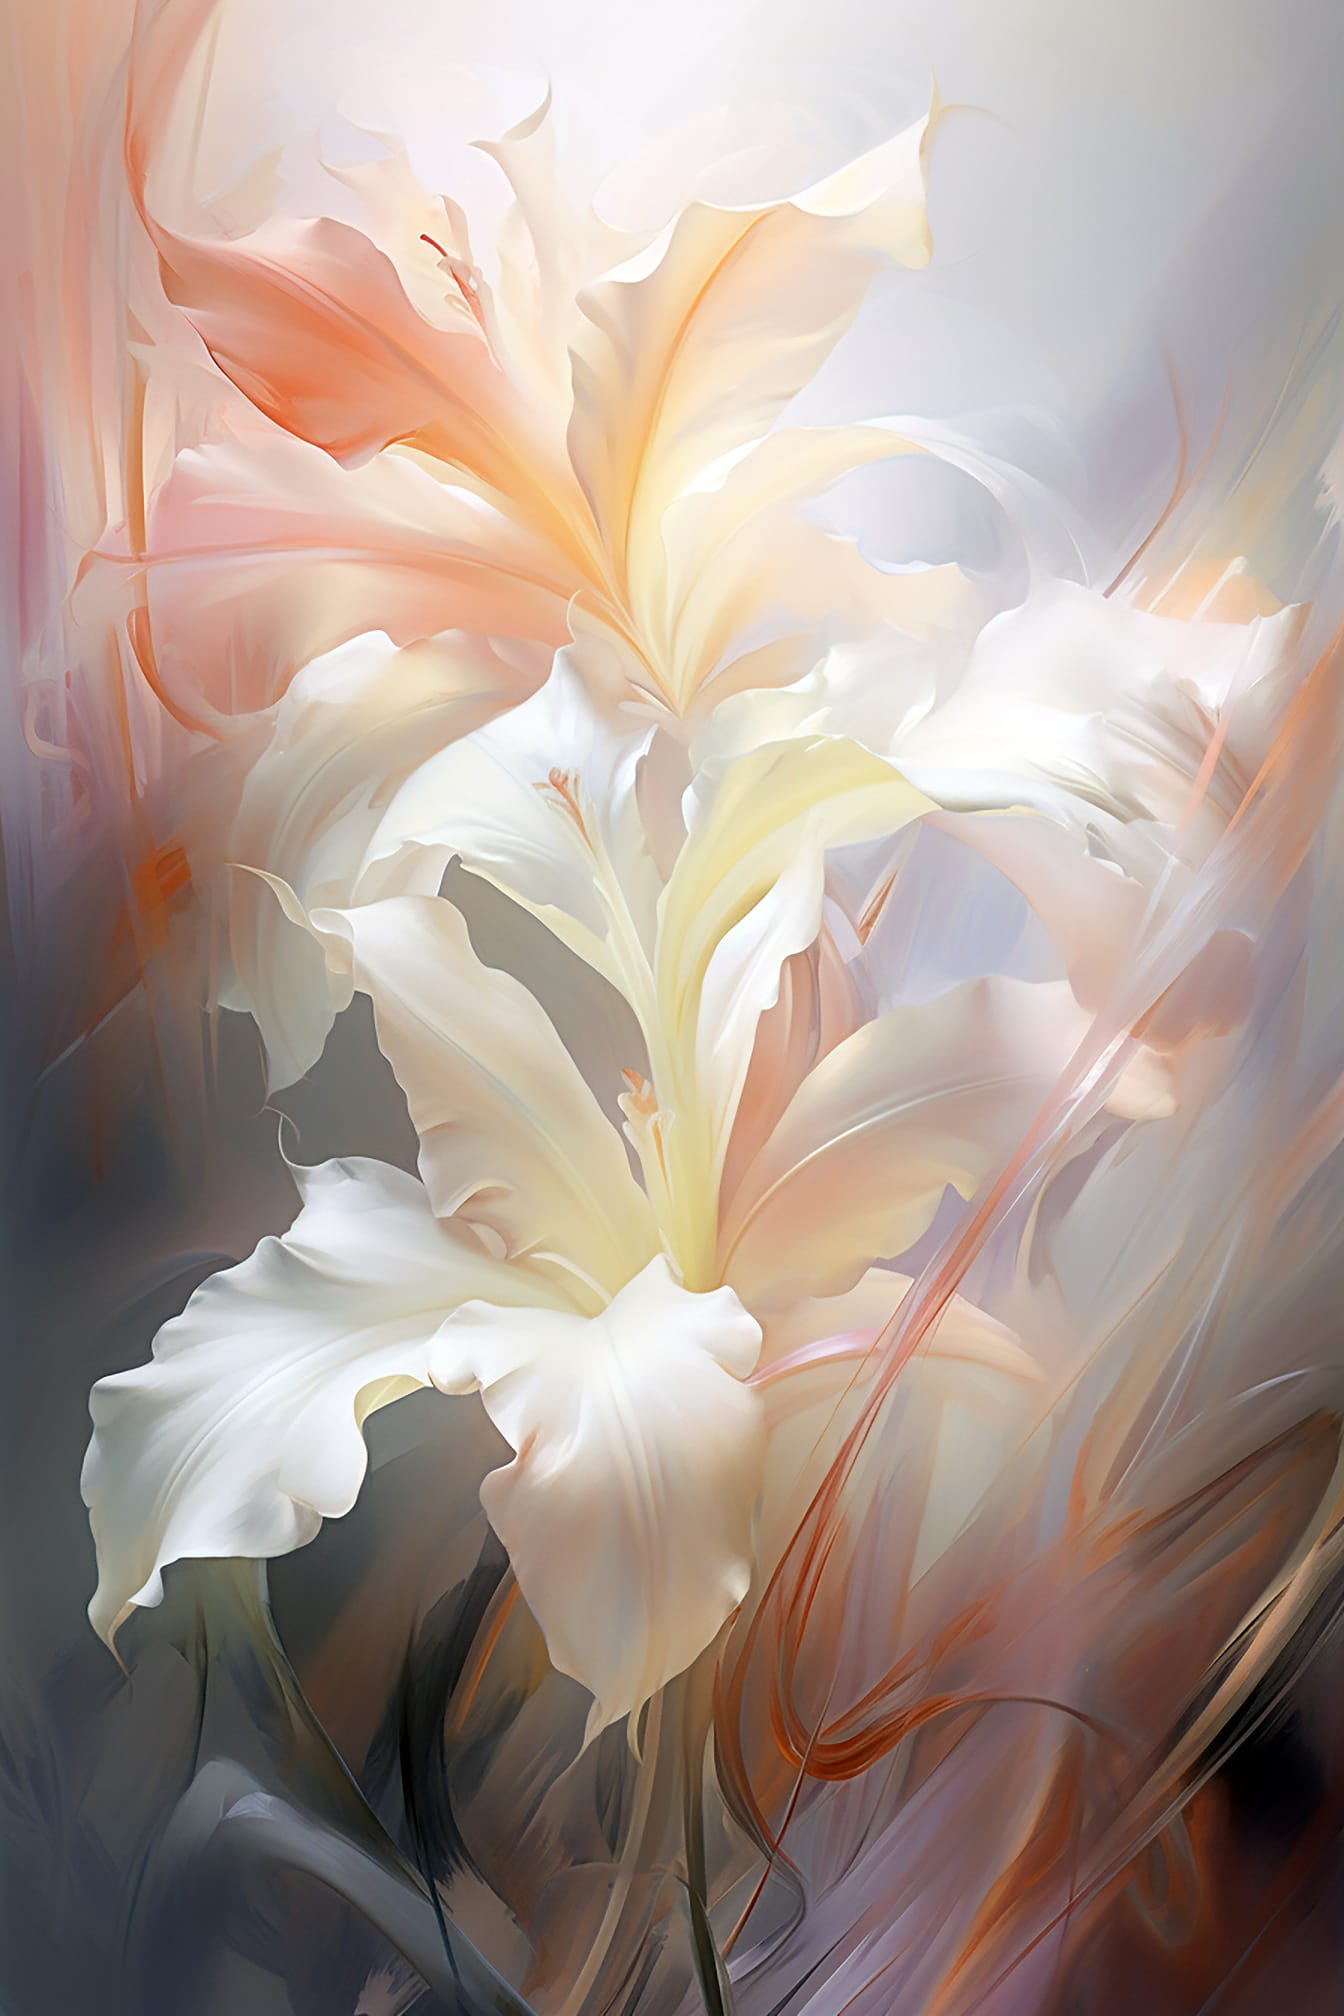 Abstracte artistieke illustratie van witte bloemblaadjes in beeldende kunststijl